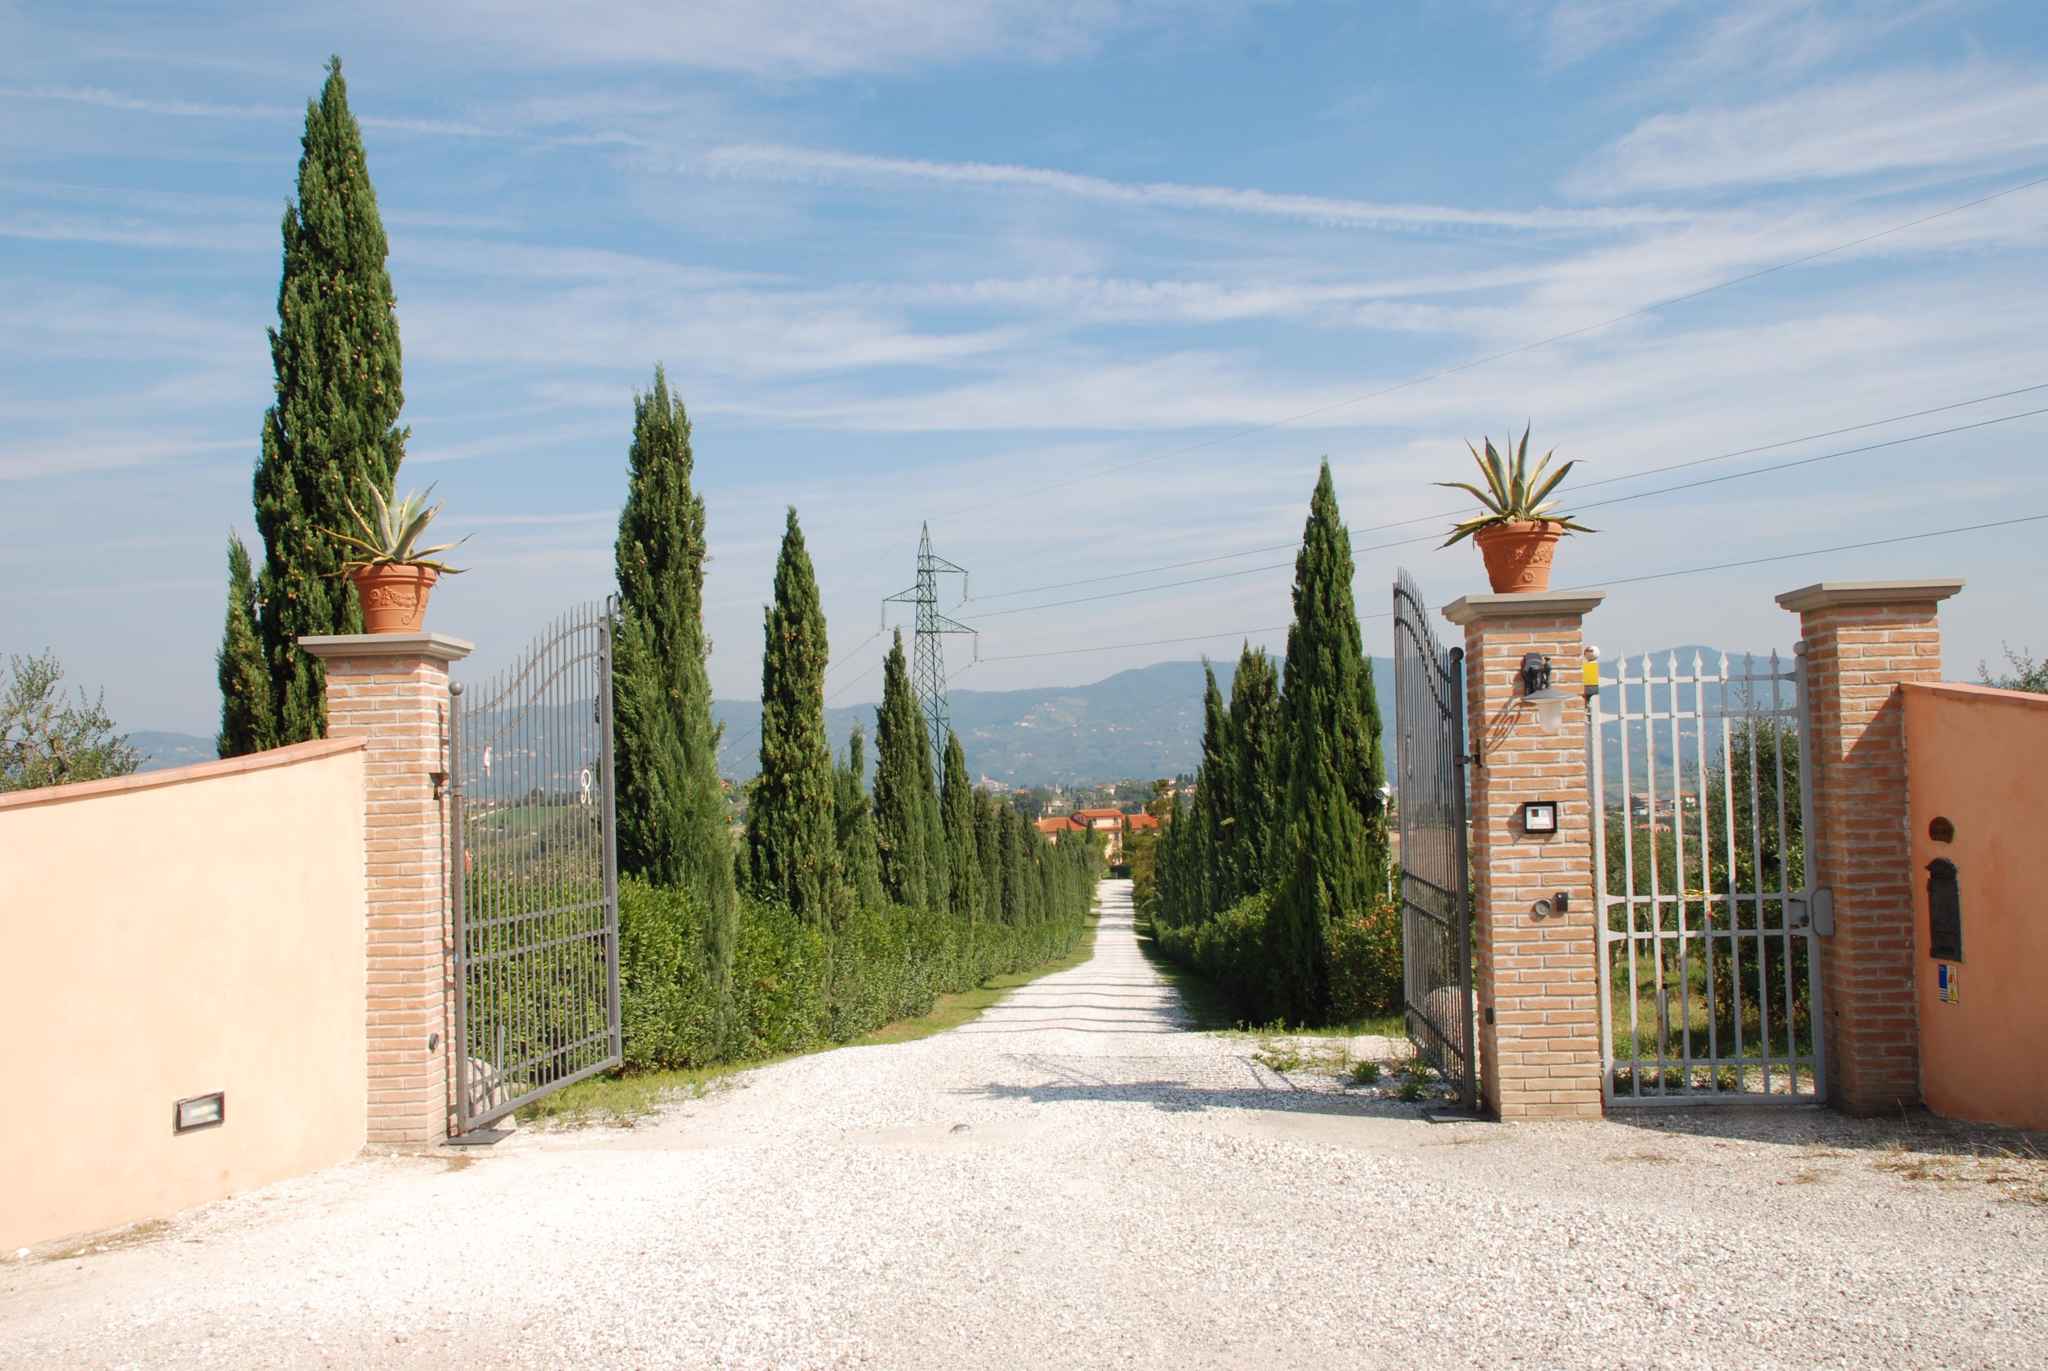 Ferienwohnung mit eigenem Garten Bauernhof in Italien